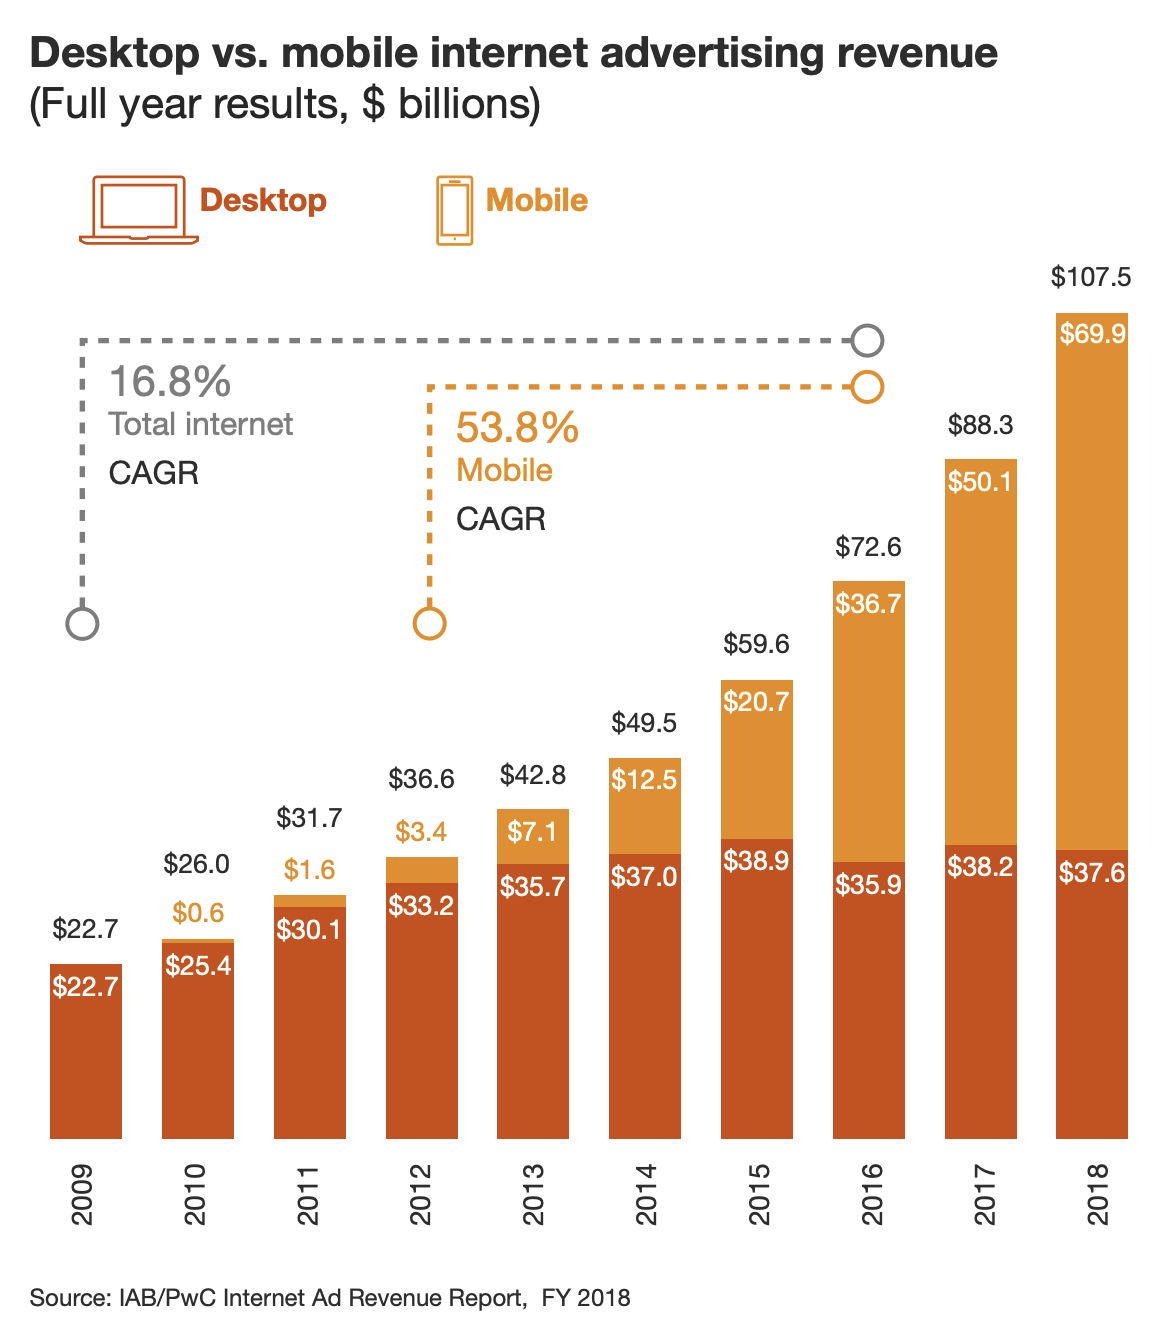 Выручка сектора интернет-рекламы в миллиардах долларов по секторам: темно-оранжевый — ПК (среднегодовые темпы роста — 16,8% в год), желтый — мобильные устройства (среднегодовые темпы роста — 53,8% в год). Источник: исследование PWC, стр. 8 (10)